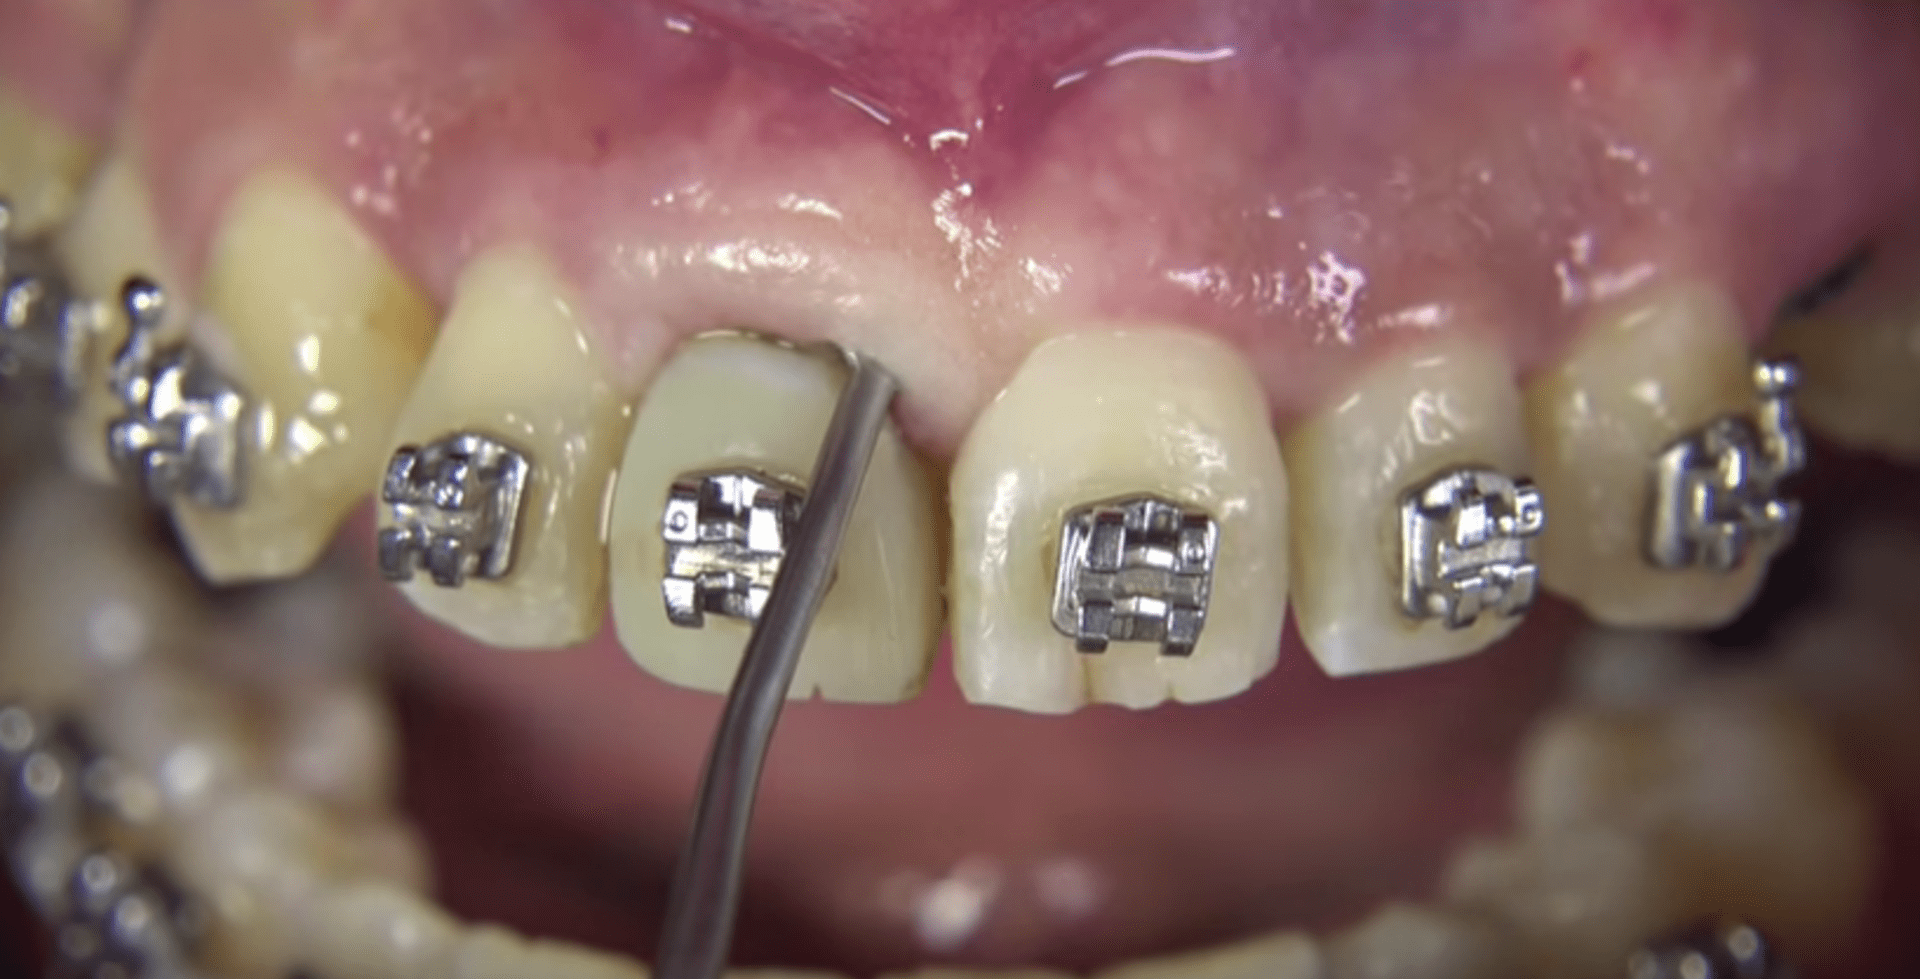 Takhle to vypadá u zubaře...